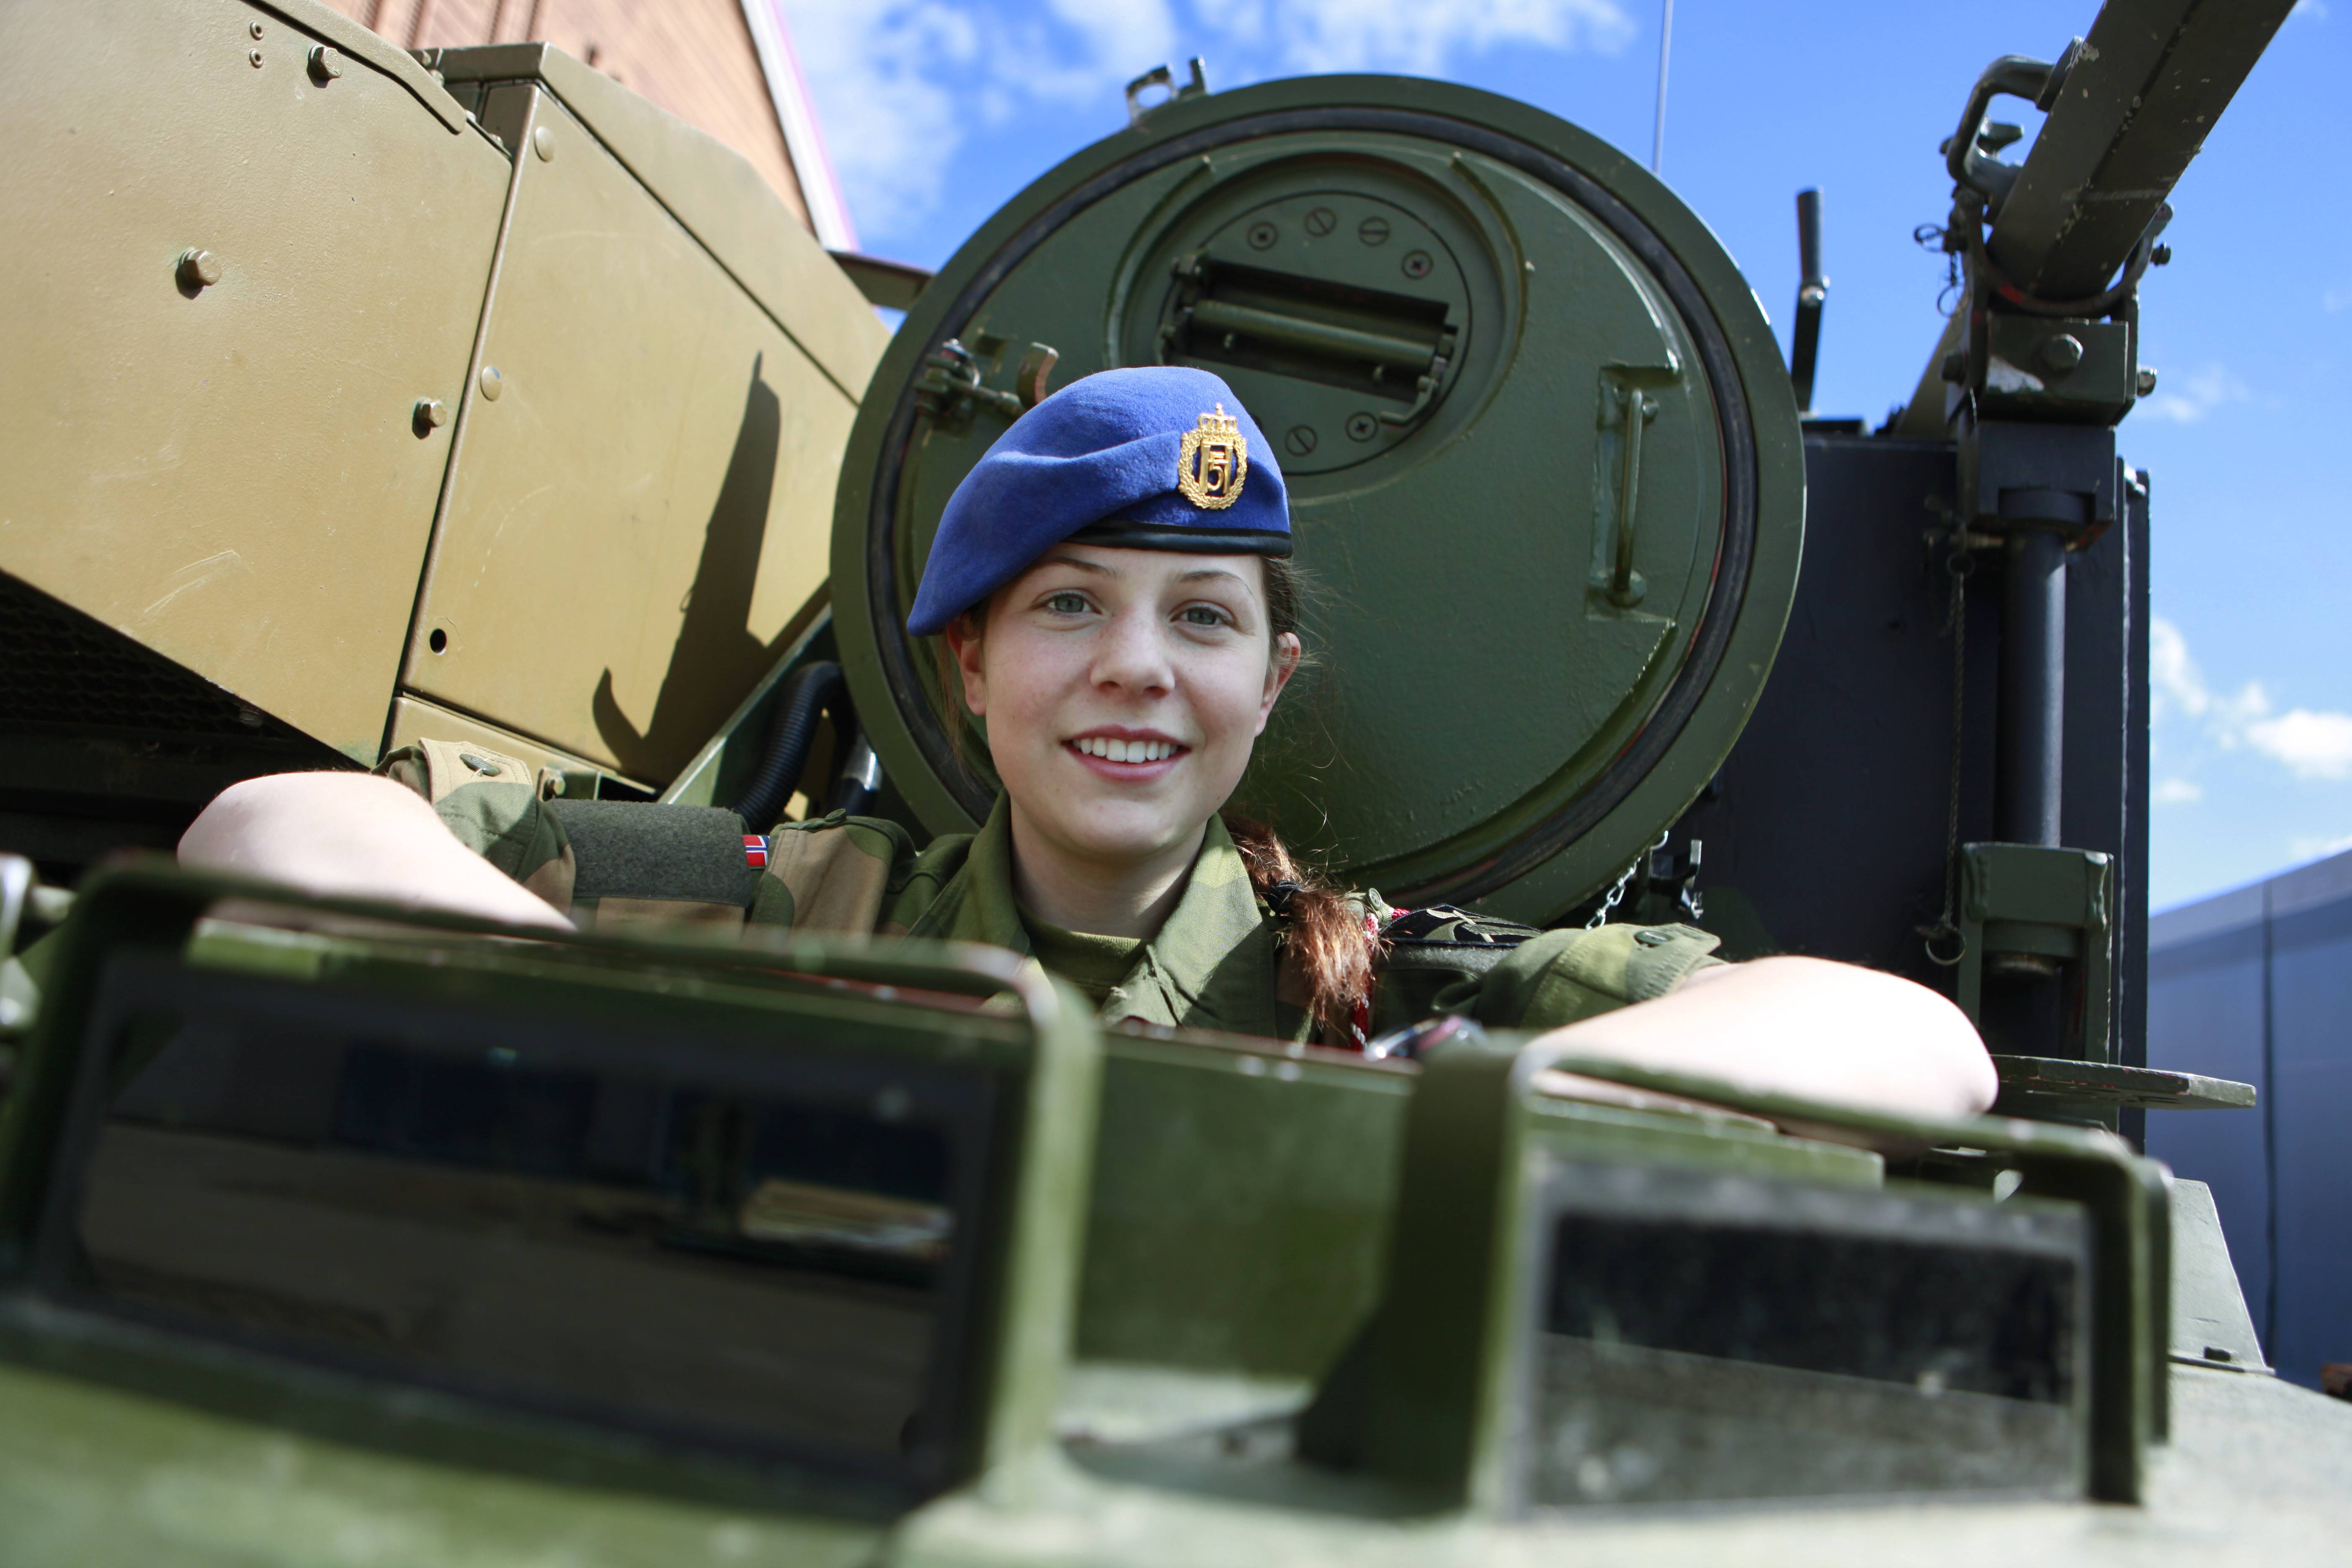 Армейские девочки. Девушки военнослужащие. Женские военные профессии. Женщины в современной армии. Российские женщины военные.